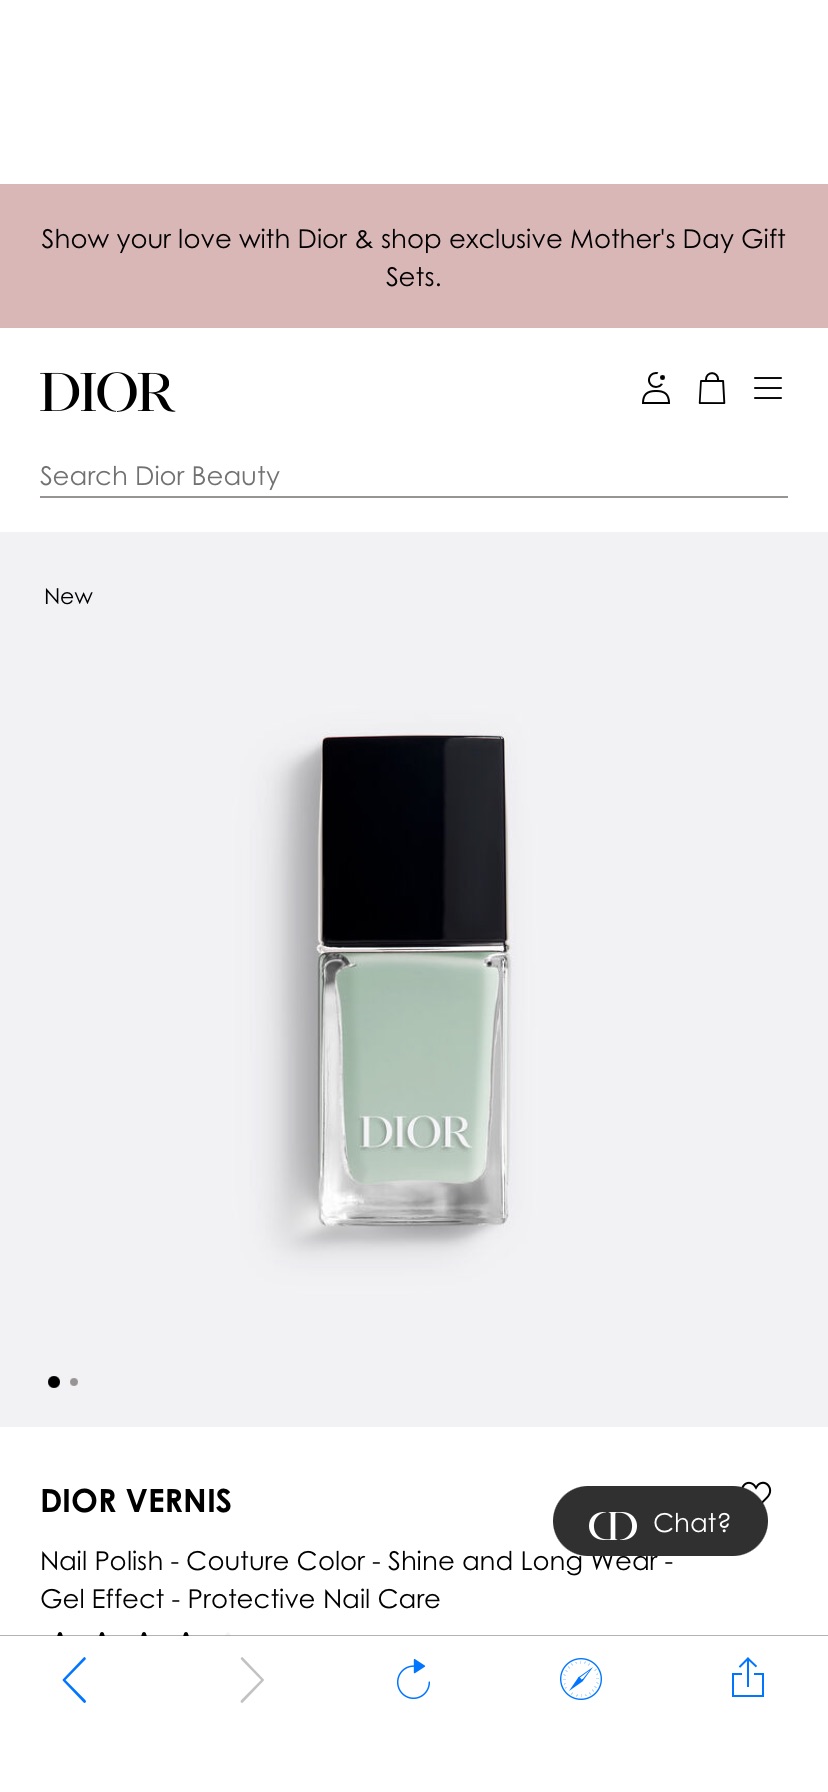 Dior Vernis: Glossy Nail Polish & Longwear Gel Effect | Dior US